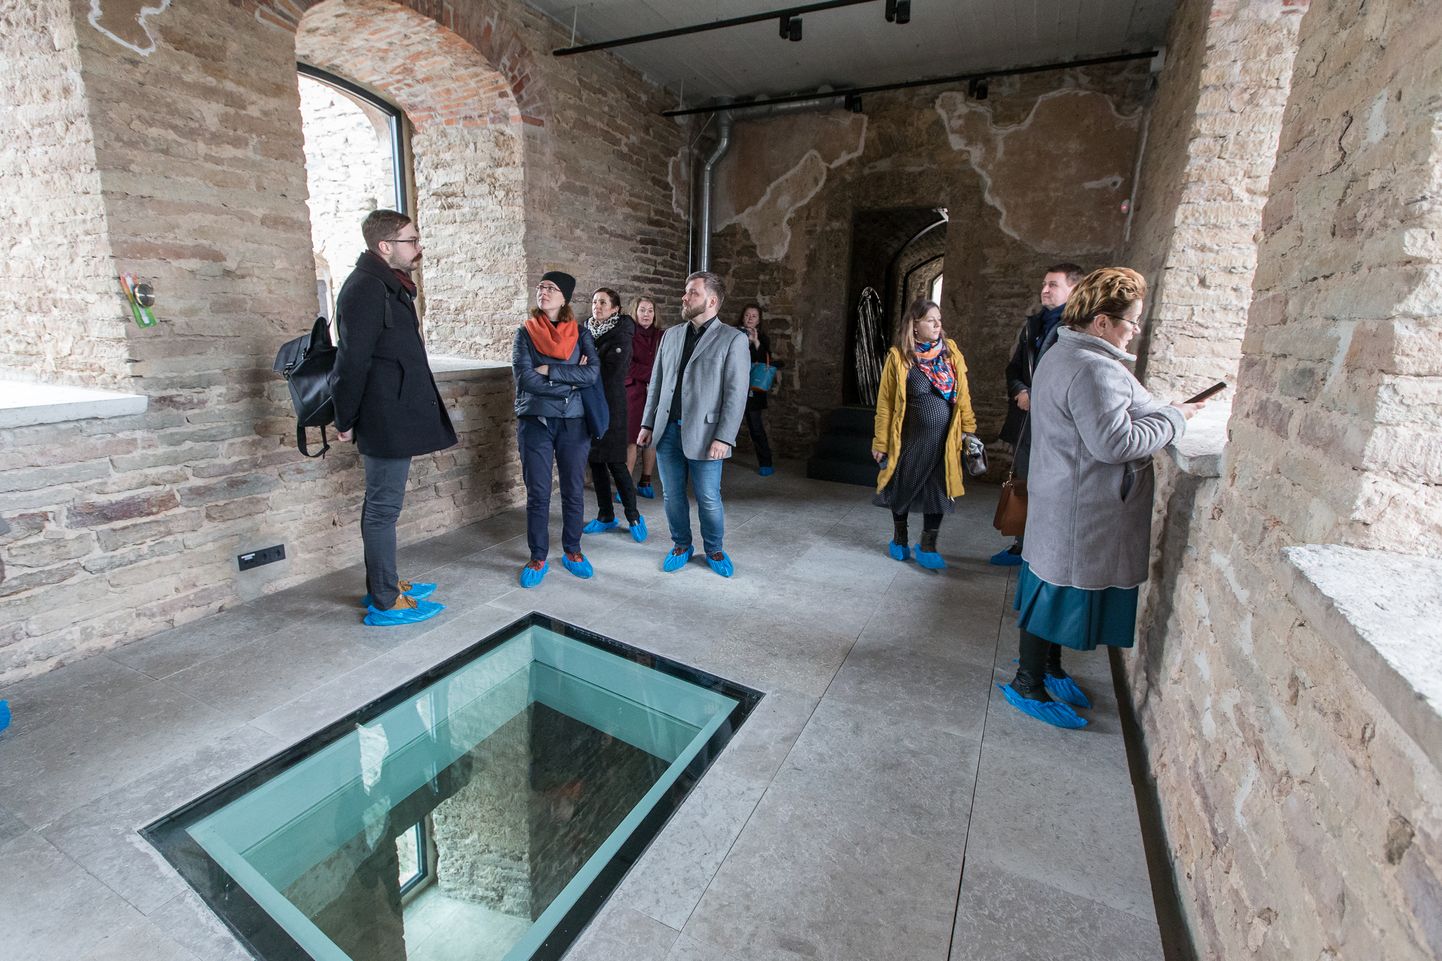 Suve alguseks on kavandatud Narva linnuse idatiiva avamine koos uhiuue ekspositsiooniga, aga muuseumi direktor Ivo Posti pelgab, et koroonaviiruse vari langeb ka suvehooajale.